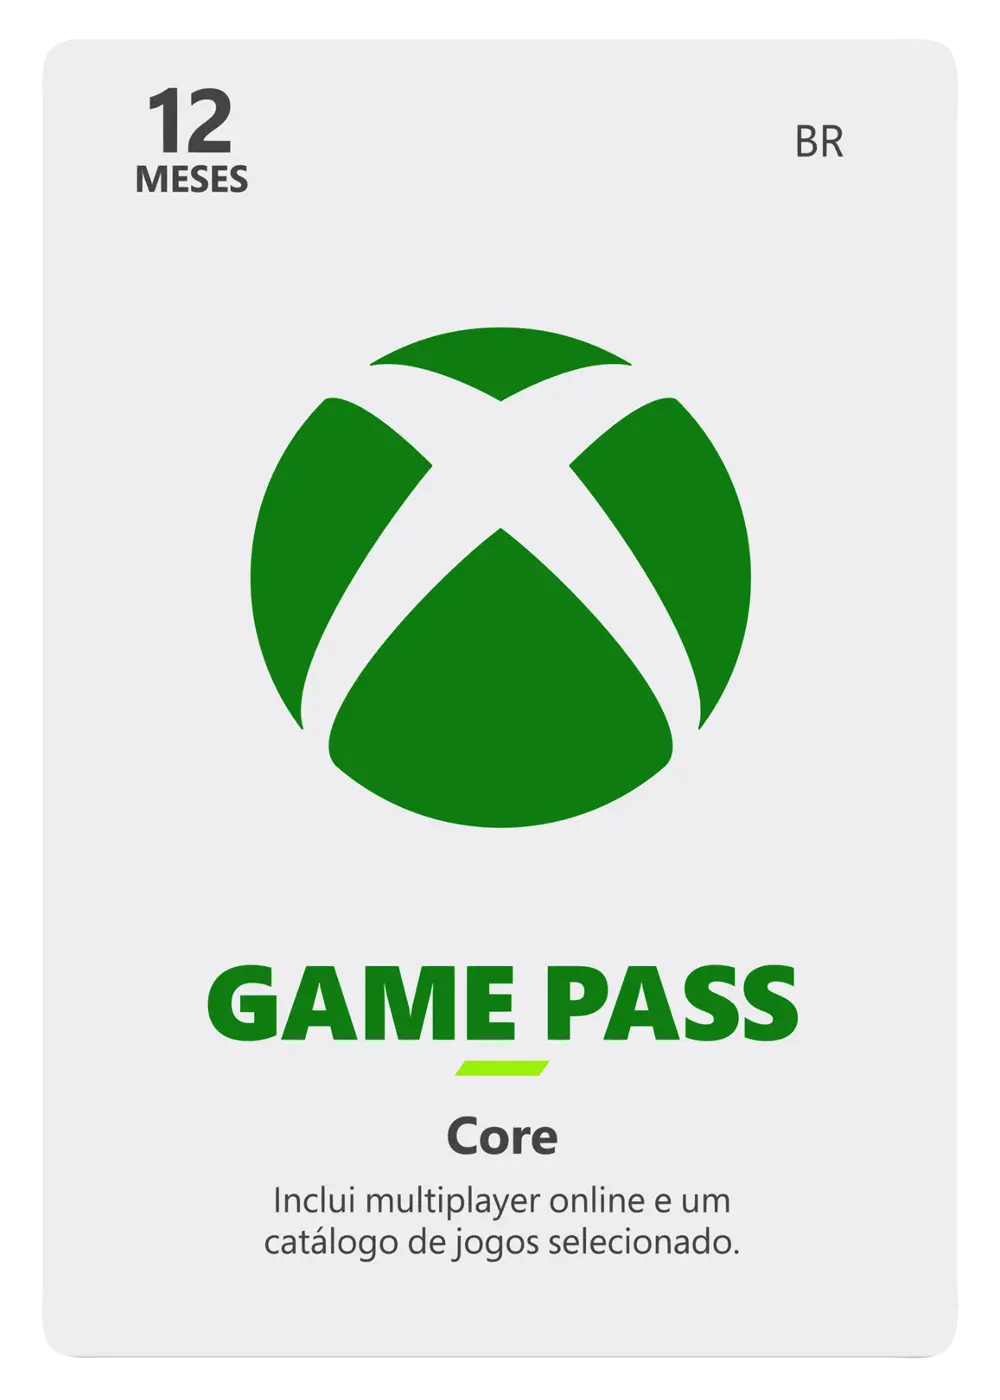 EA Play Xbox - Assinatura de 1 Mês Brasil - Código Digital